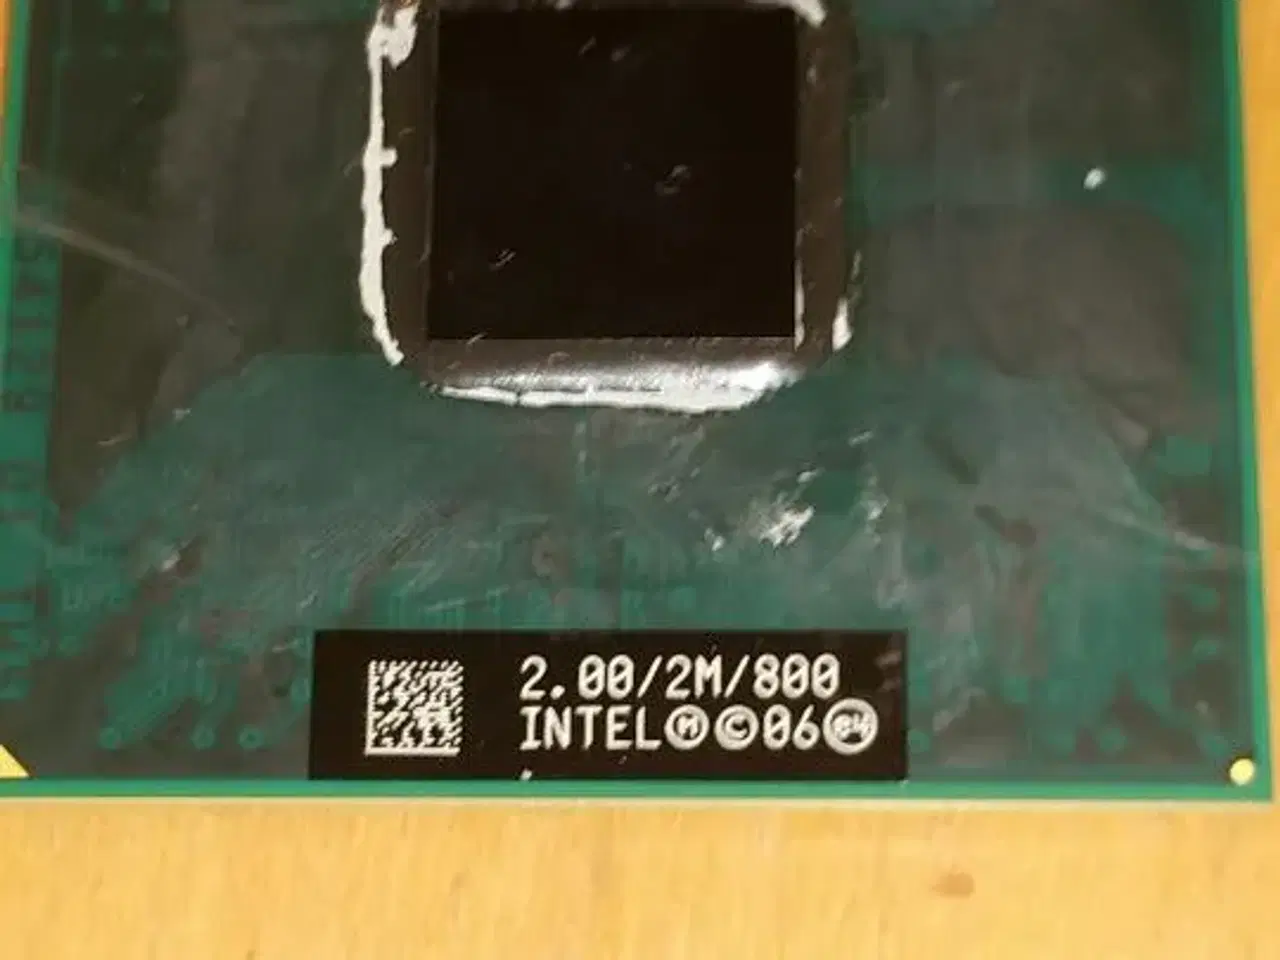 Billede 1 - Intel core 2 duo 2.00/2M/800 T7250